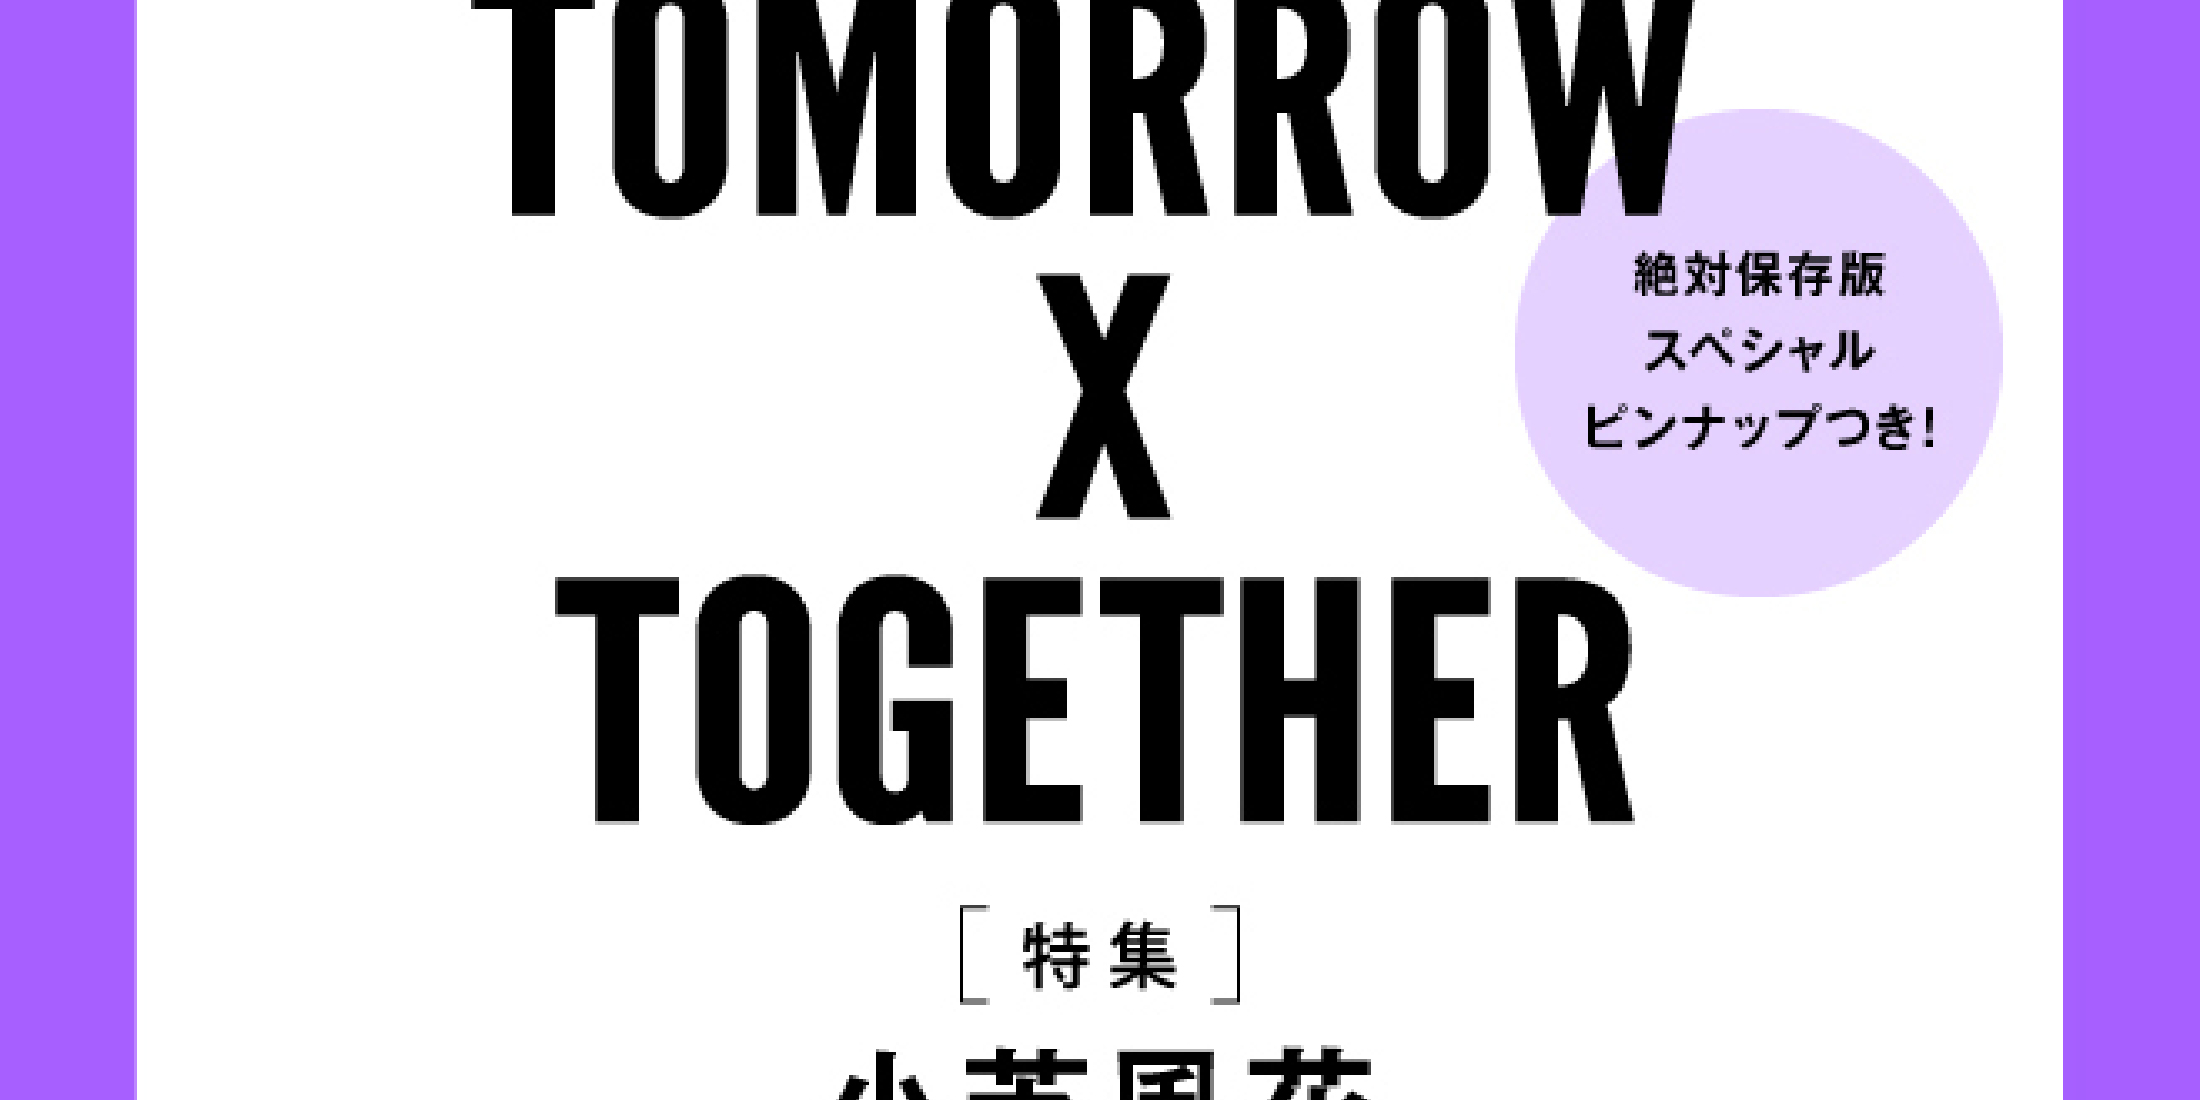 【予約開始】速報!! MORE８月号スペシャルエディション版の表紙はTOMORROW X TOGETHER！　スペシャルピンナップつき。（６月28日発売）